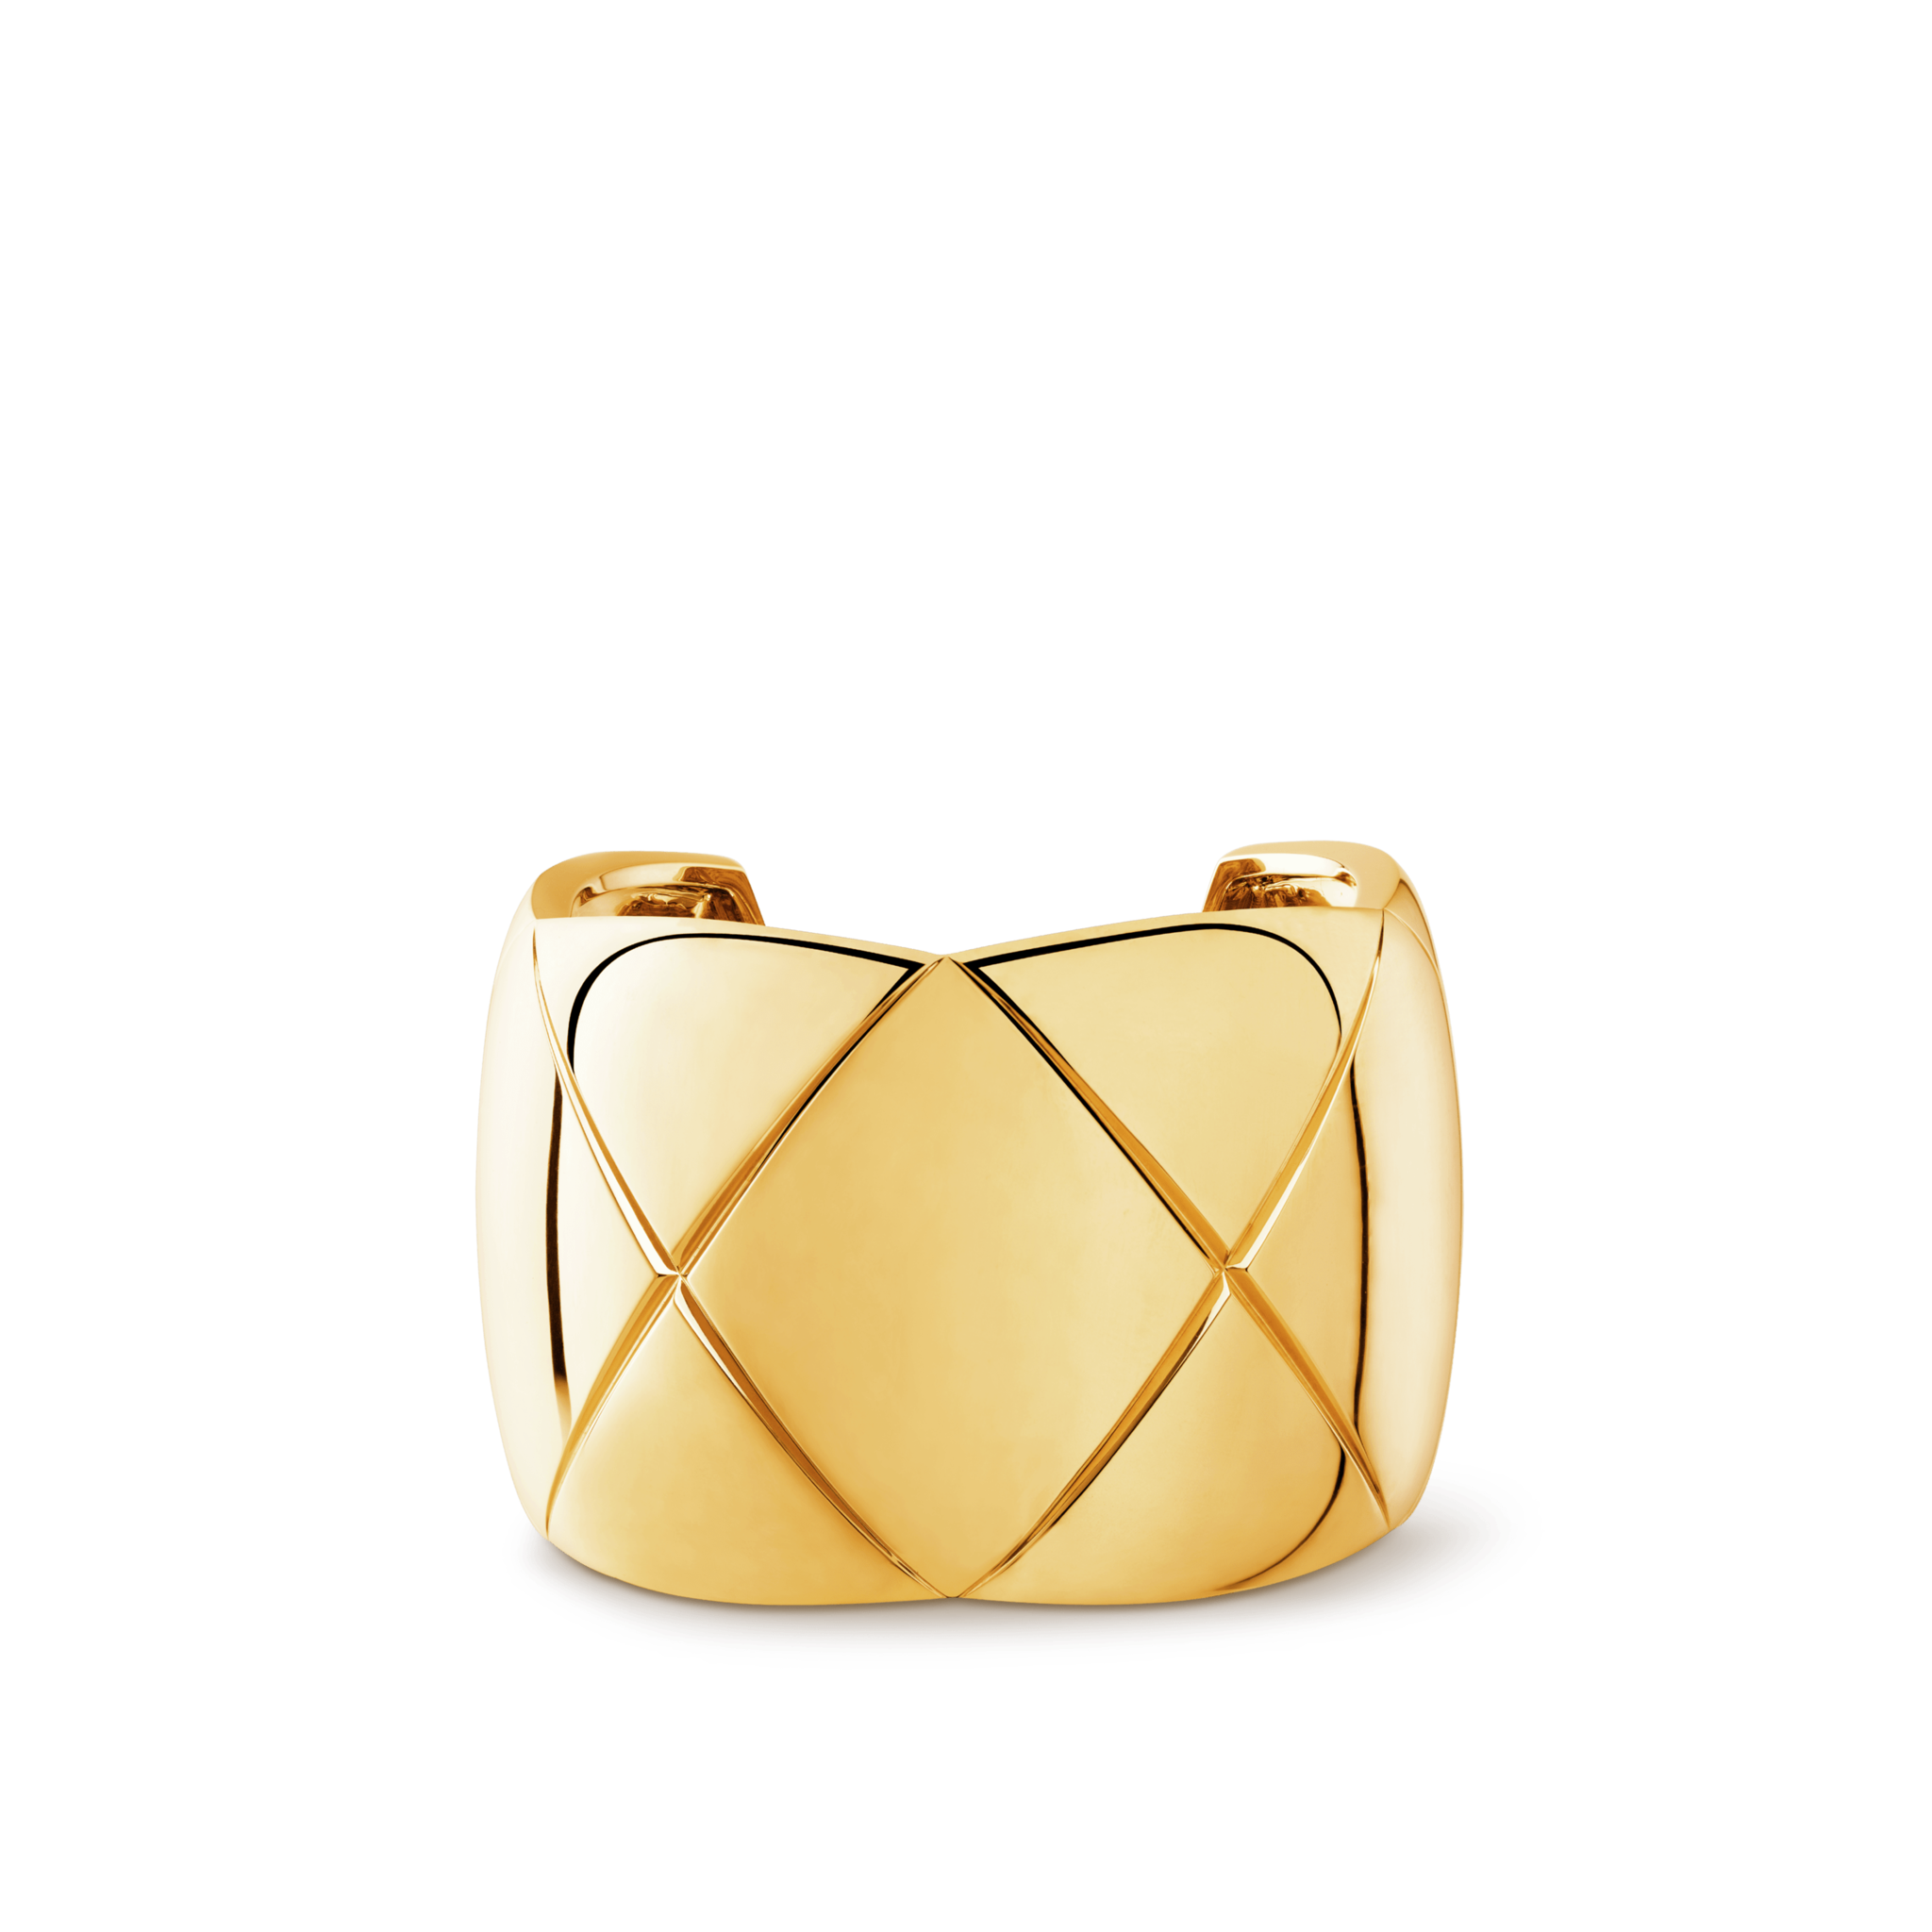 Brazalete de oro de Chanel.